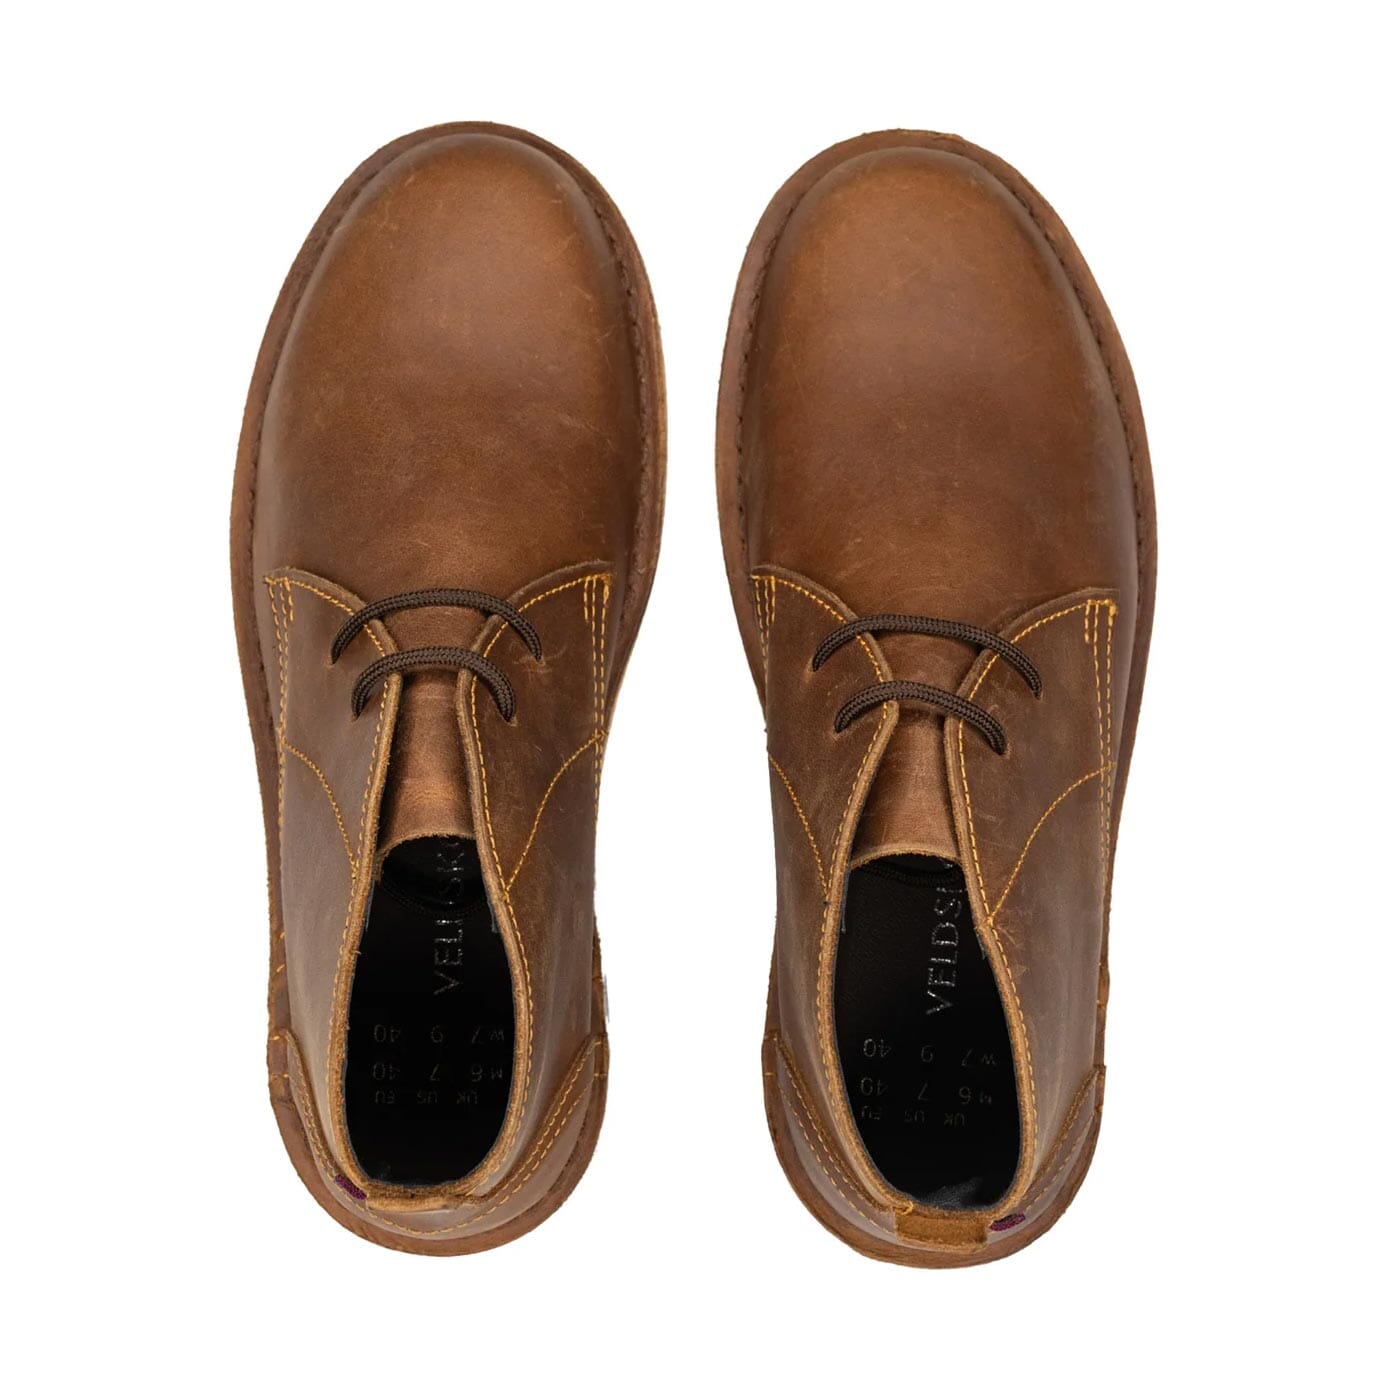 Veldskoen Chukka Leather Boot - Brown | Made by Artisans